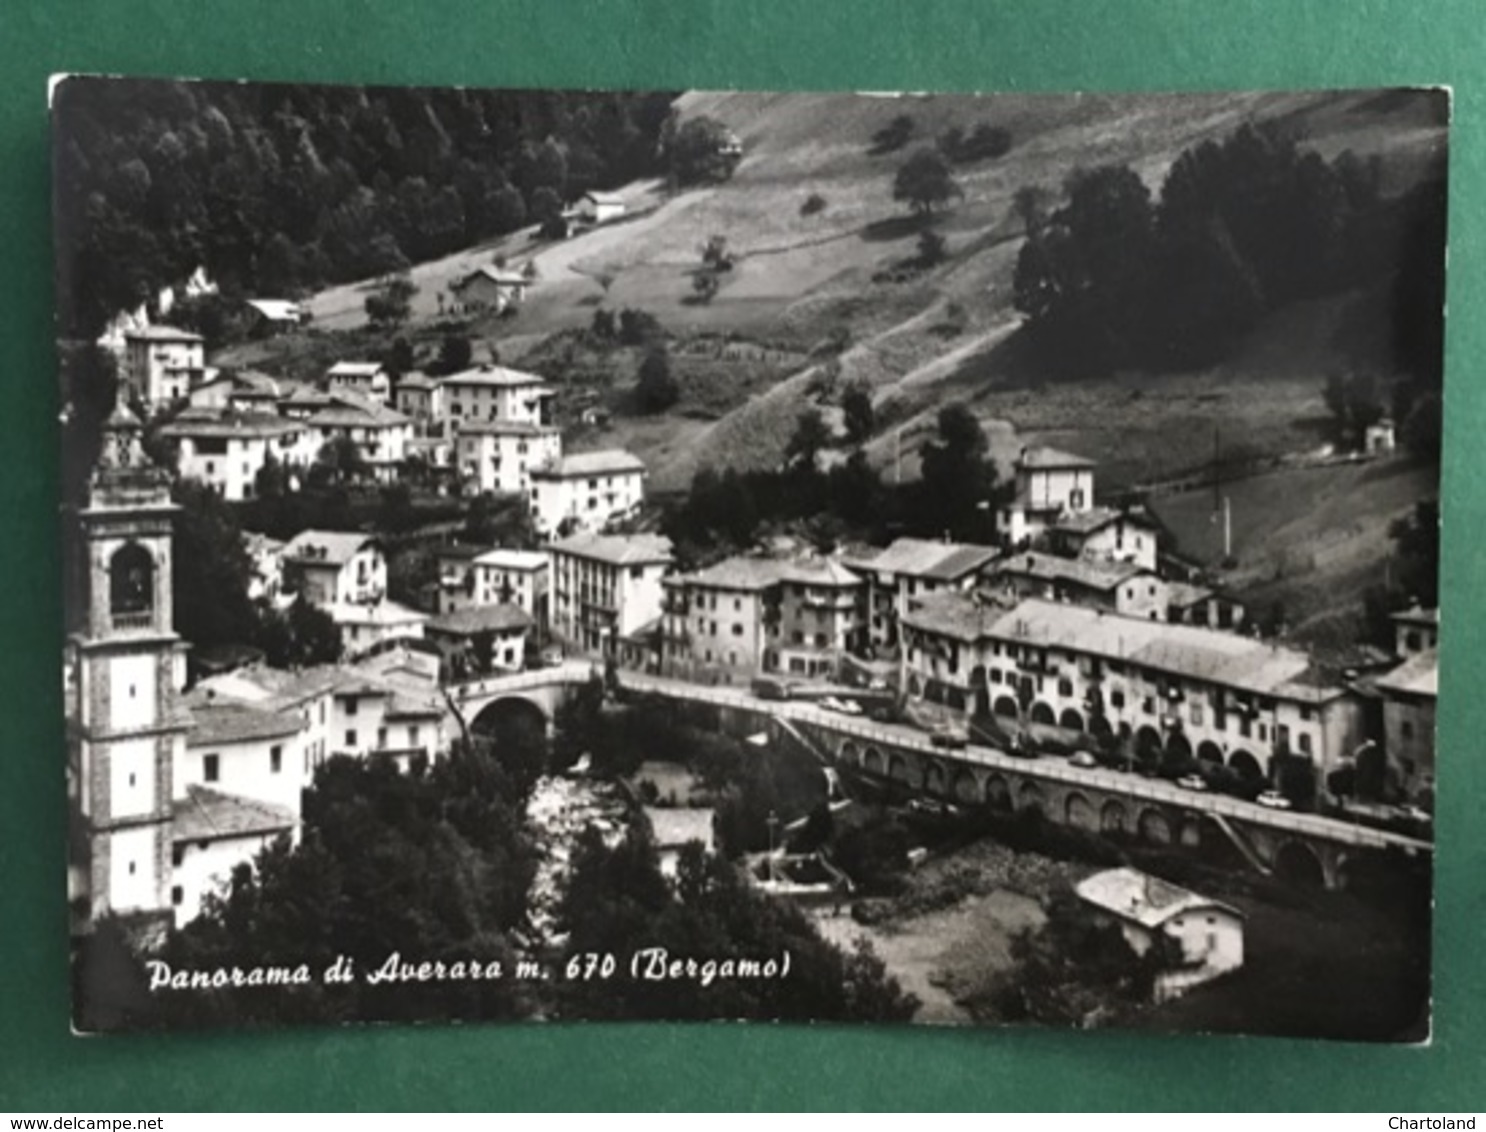 Cartolina Panorama Di Averara M.670 - Bergamo - 1960 Ca. - Bergamo